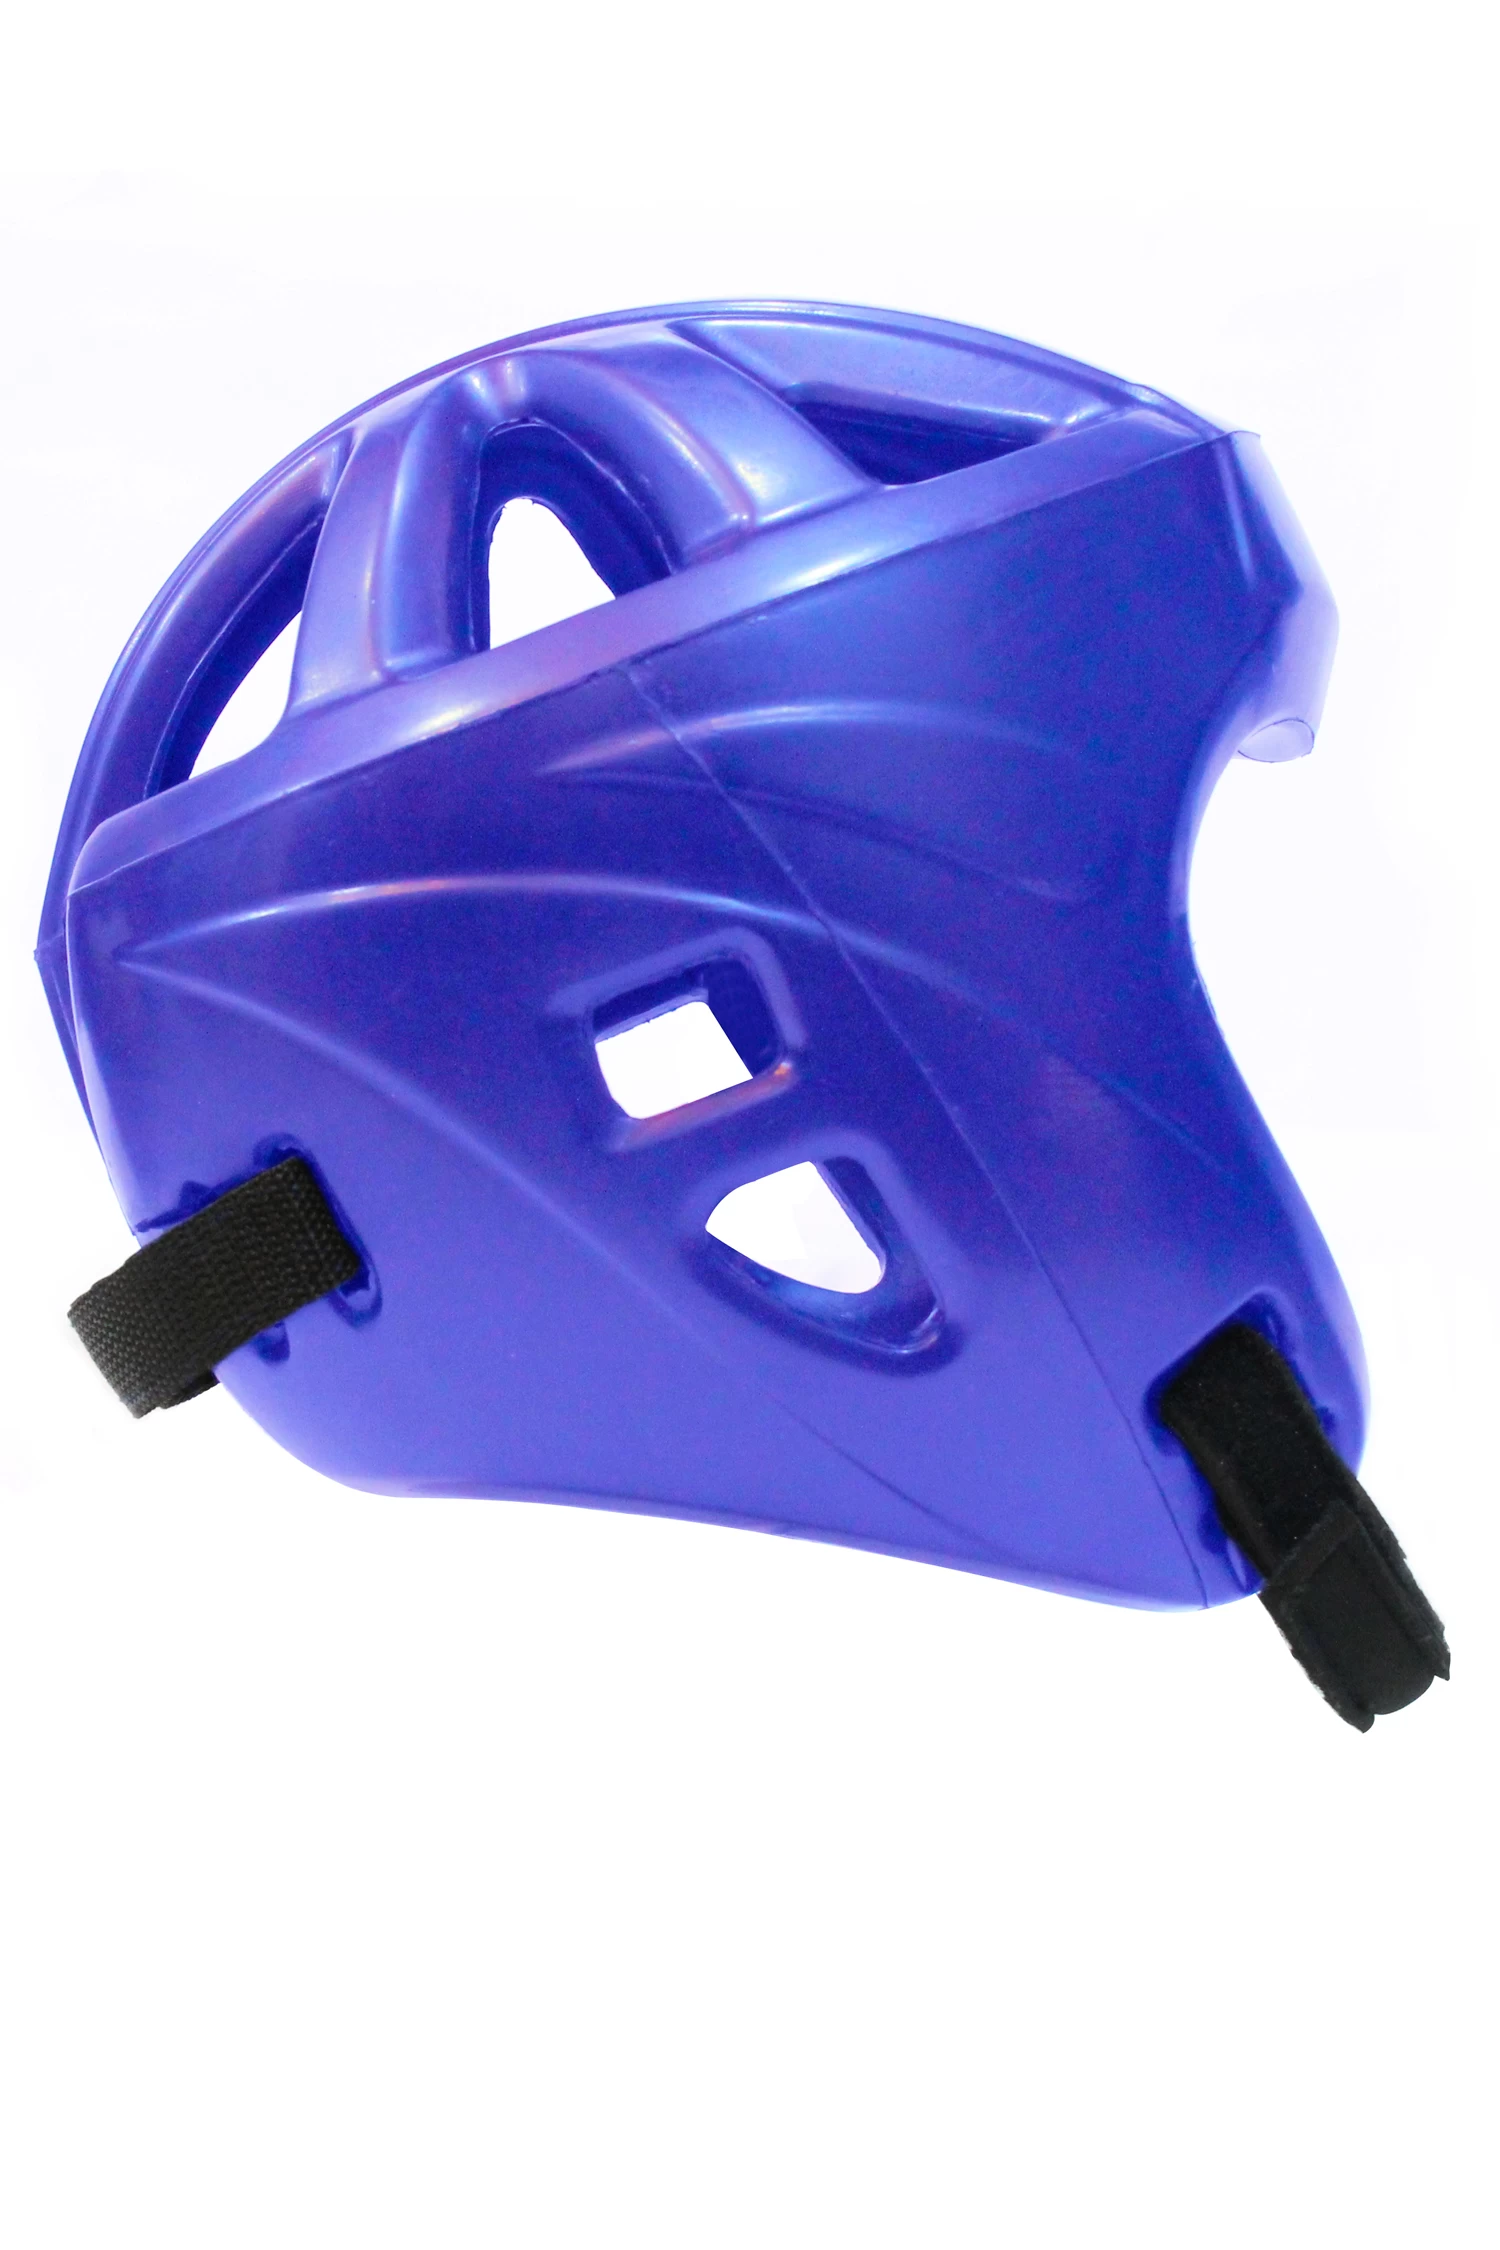 Китай Китай PU полиуретановый шлем нового стиля поставщик Китай легкий боксерский шлем завод Китай производитель противоударных боксерских шлемов производителя